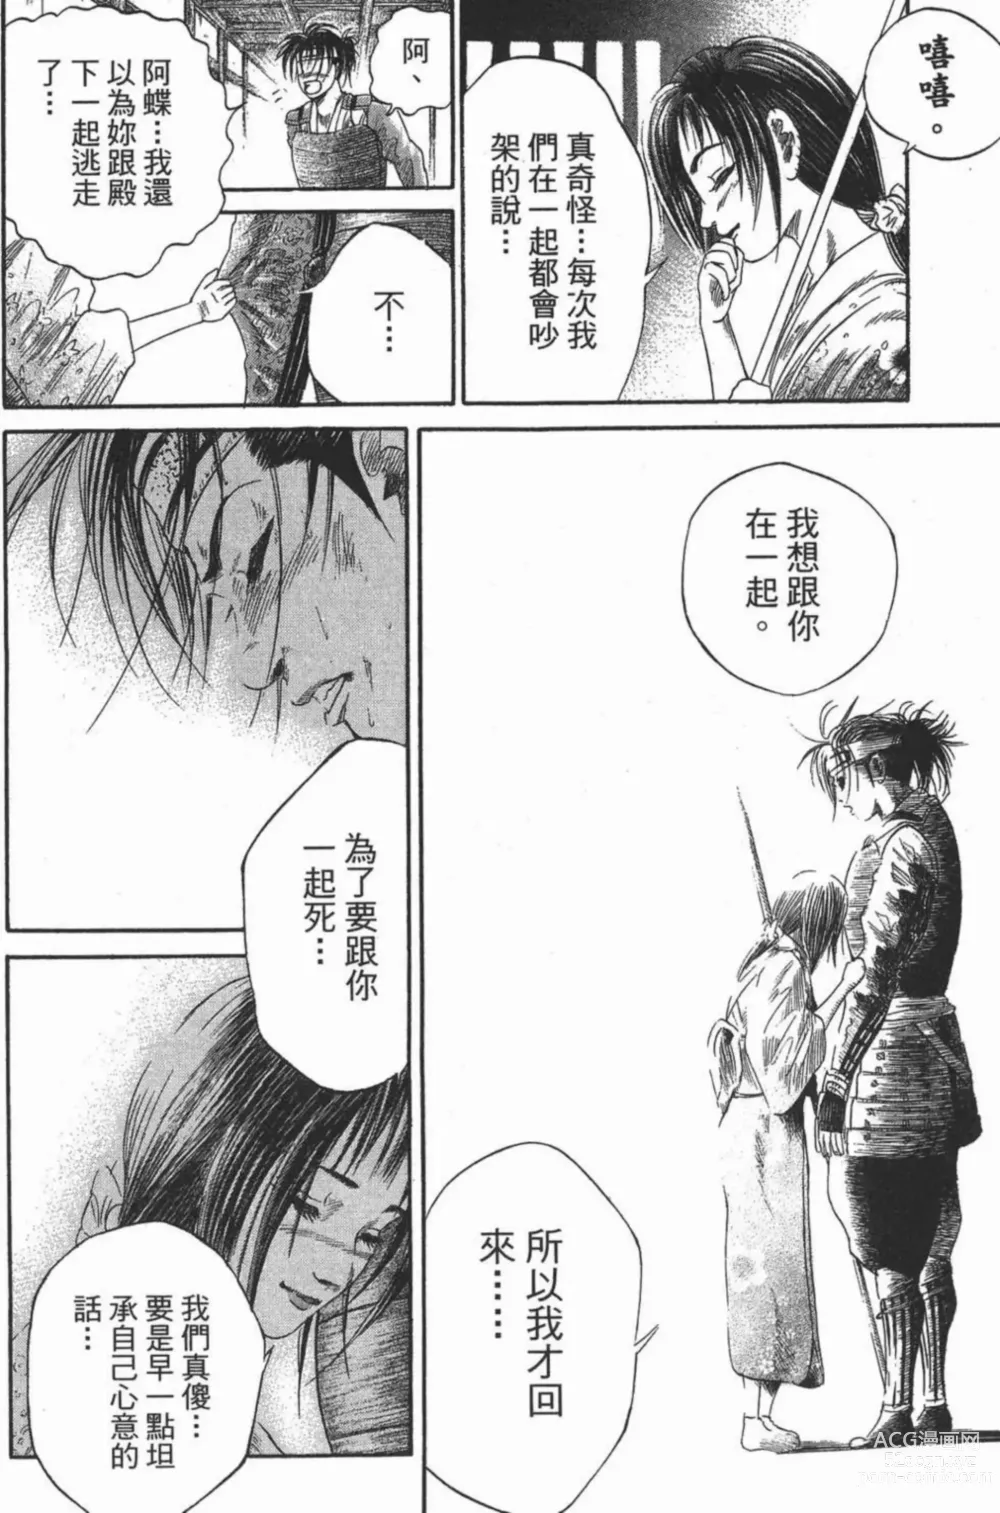 Page 24 of manga [宫下英树]战国第一卷［中文］